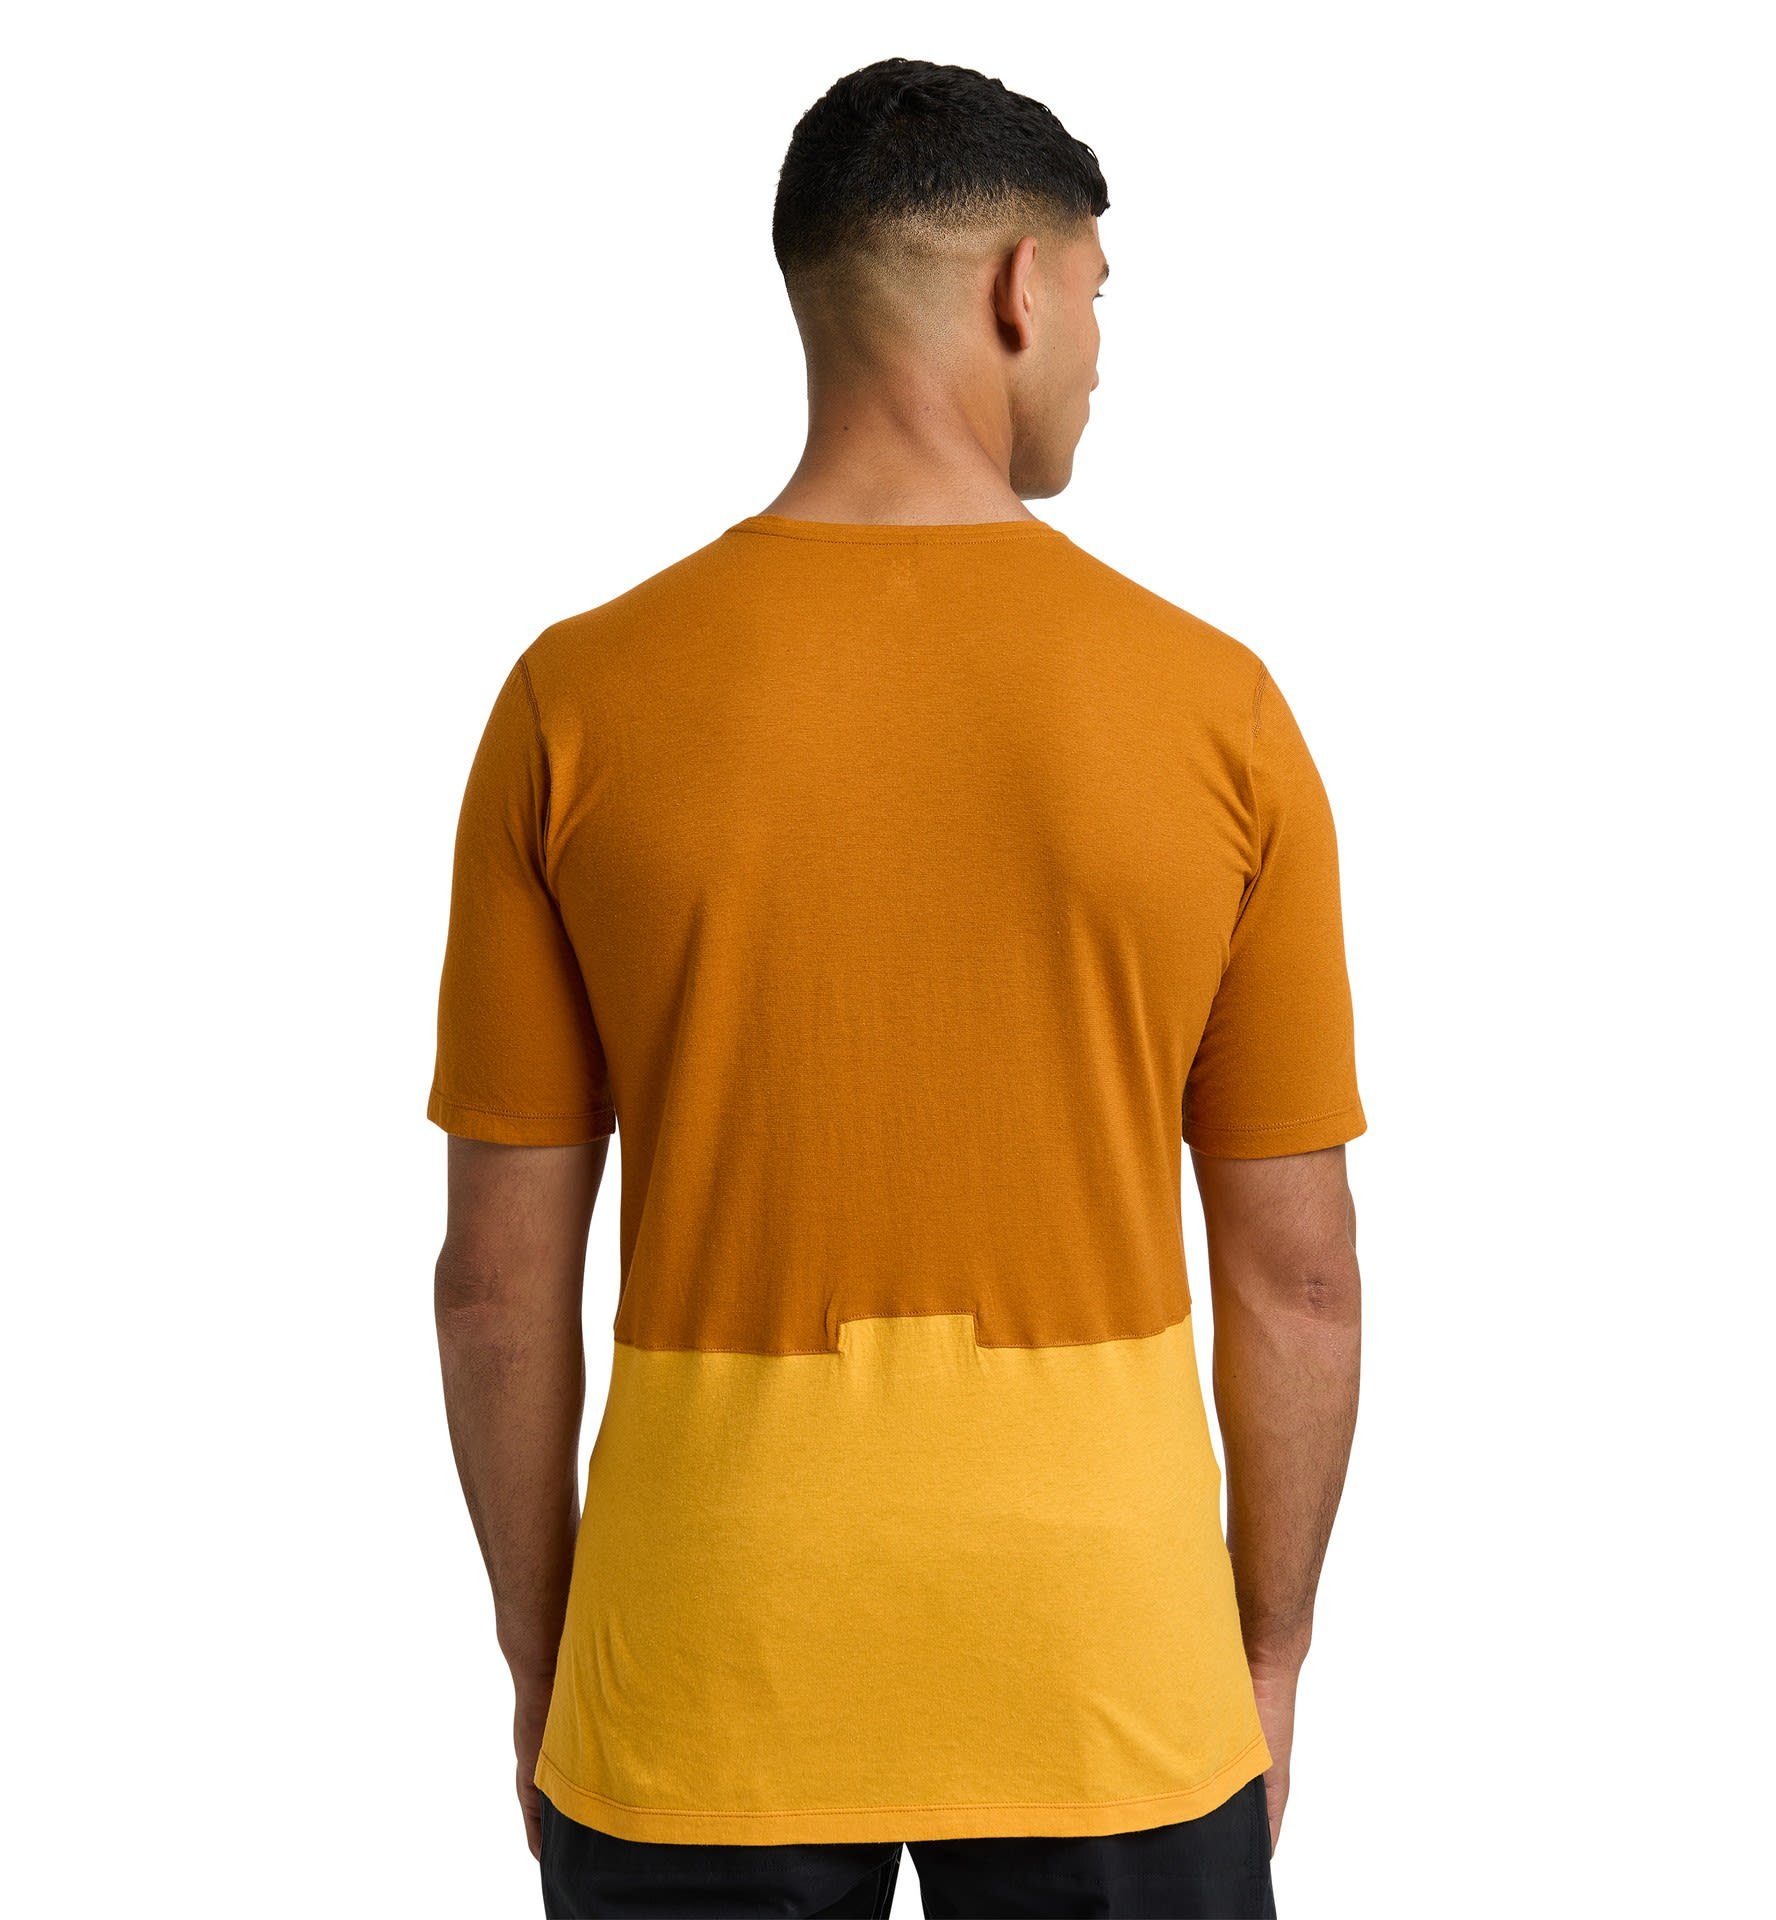 Haglöfs T-Shirt Grip Yellow - Golden M Brown Tee Roc Herren Sunny Haglöfs Kurzarm-Shirt